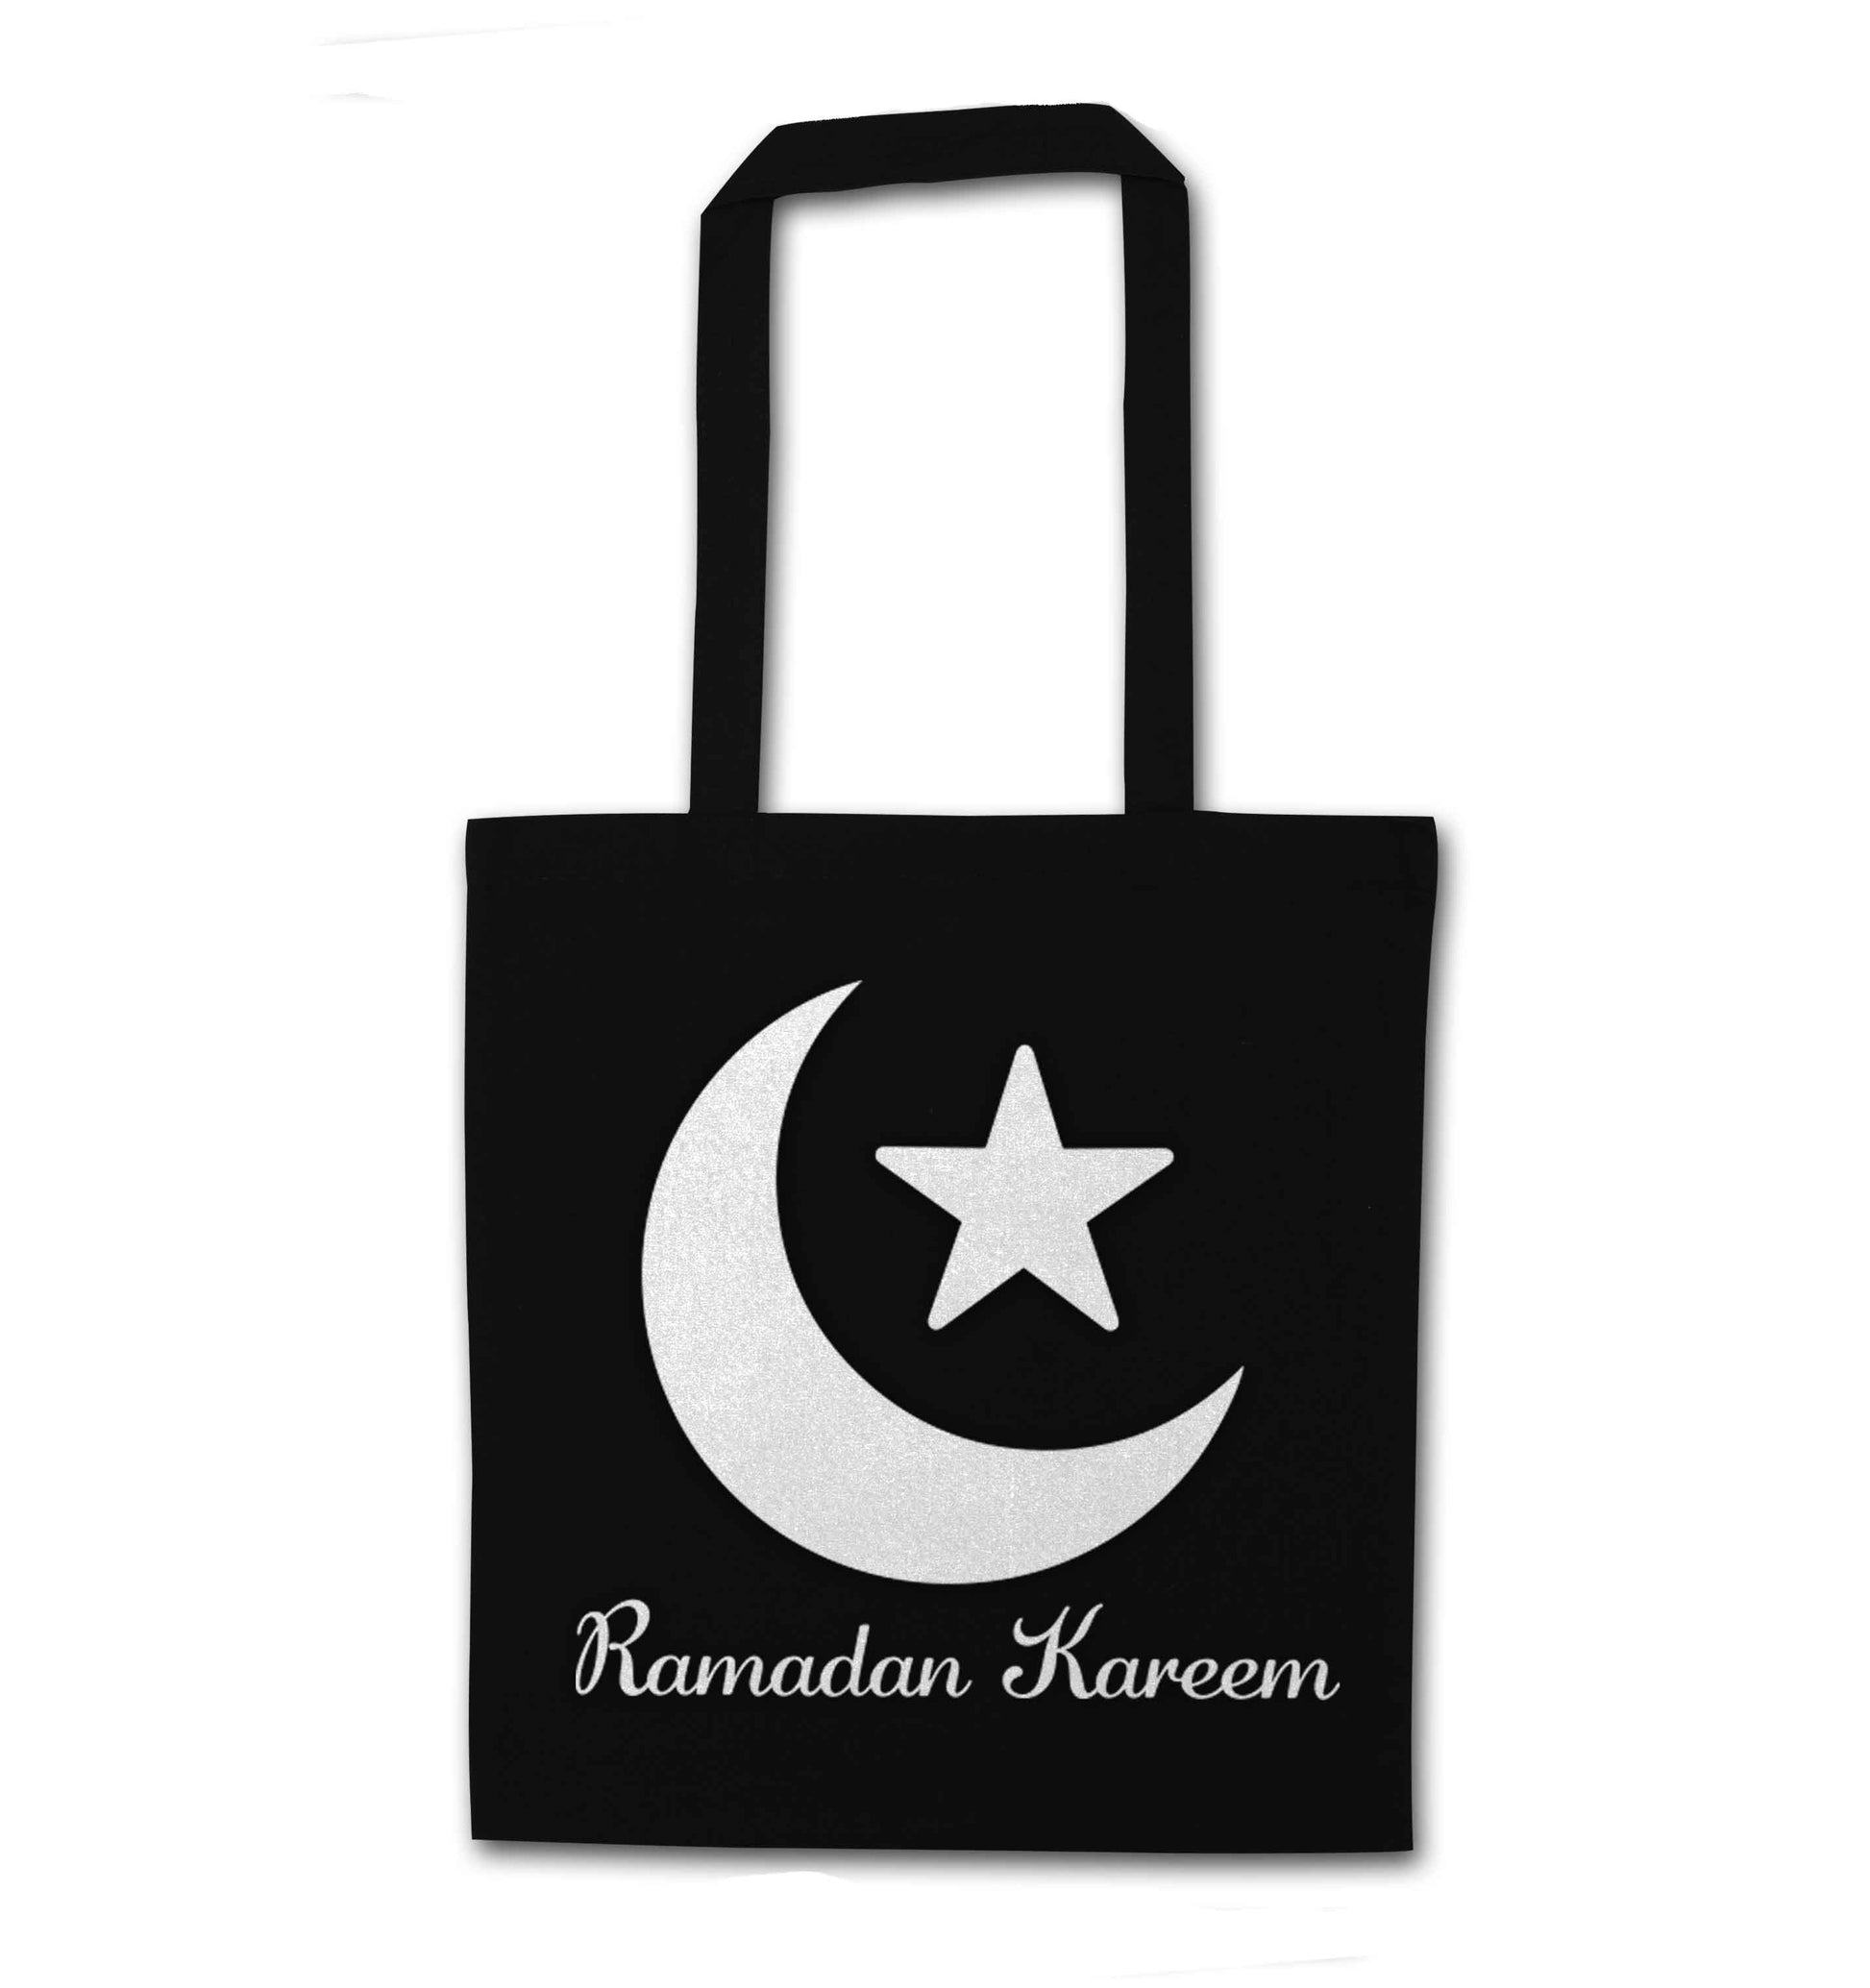 Ramadan kareem black tote bag